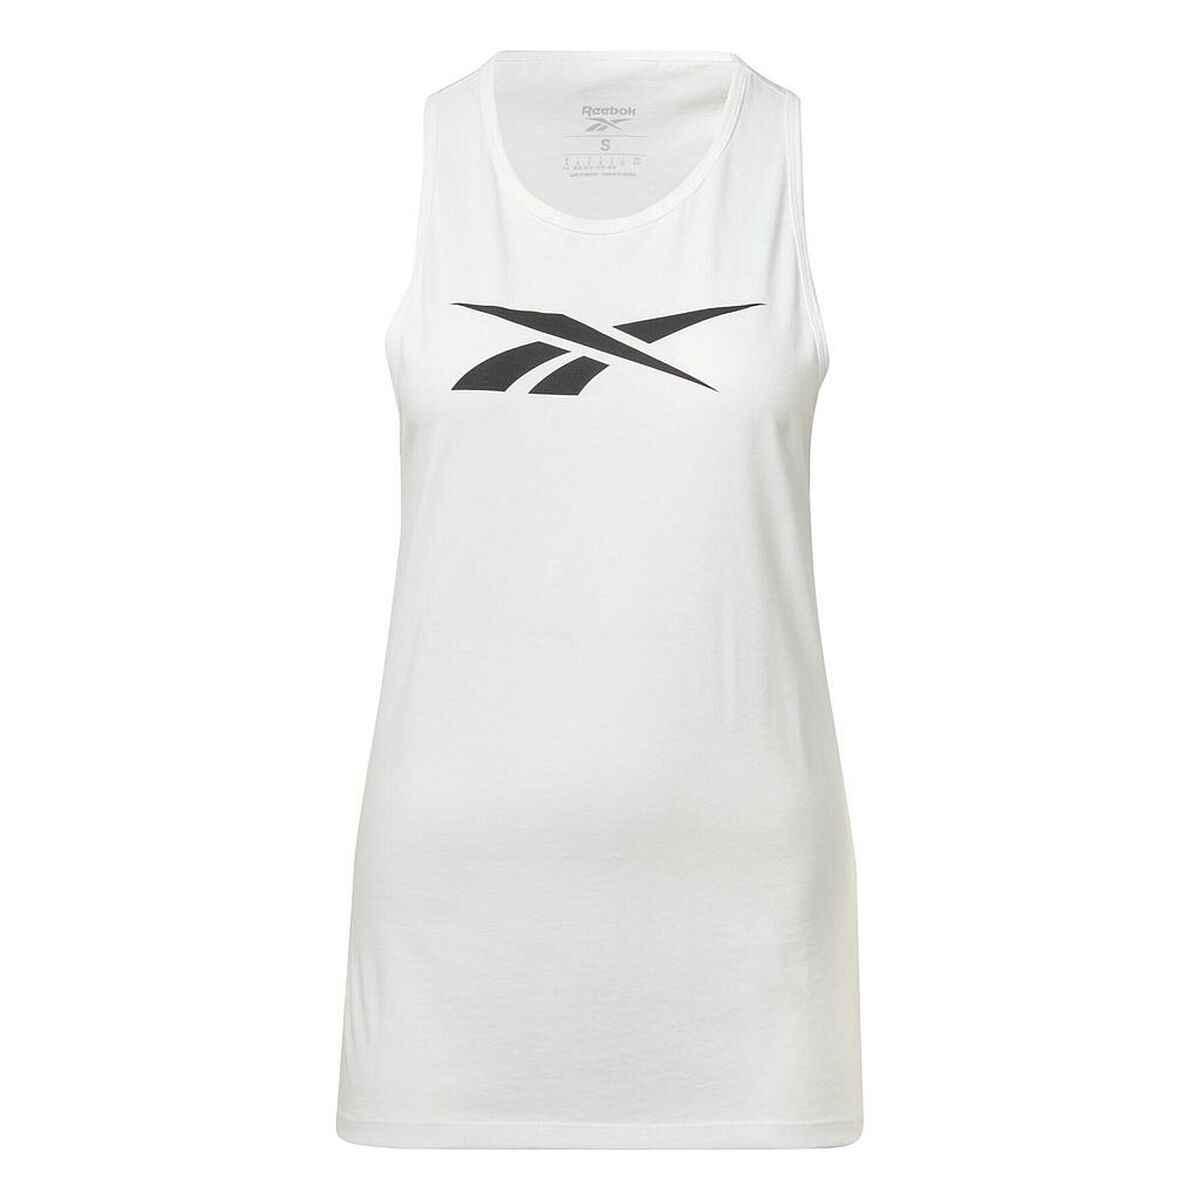 Osta tuote Naisten hihaton paita Reebok TE GRAPHIC TANK HT6181 Valkoinen verkkokaupastamme Korhone: Urheilu & Vapaa-aika 20% alennuksella koodilla VIIKONLOPPU